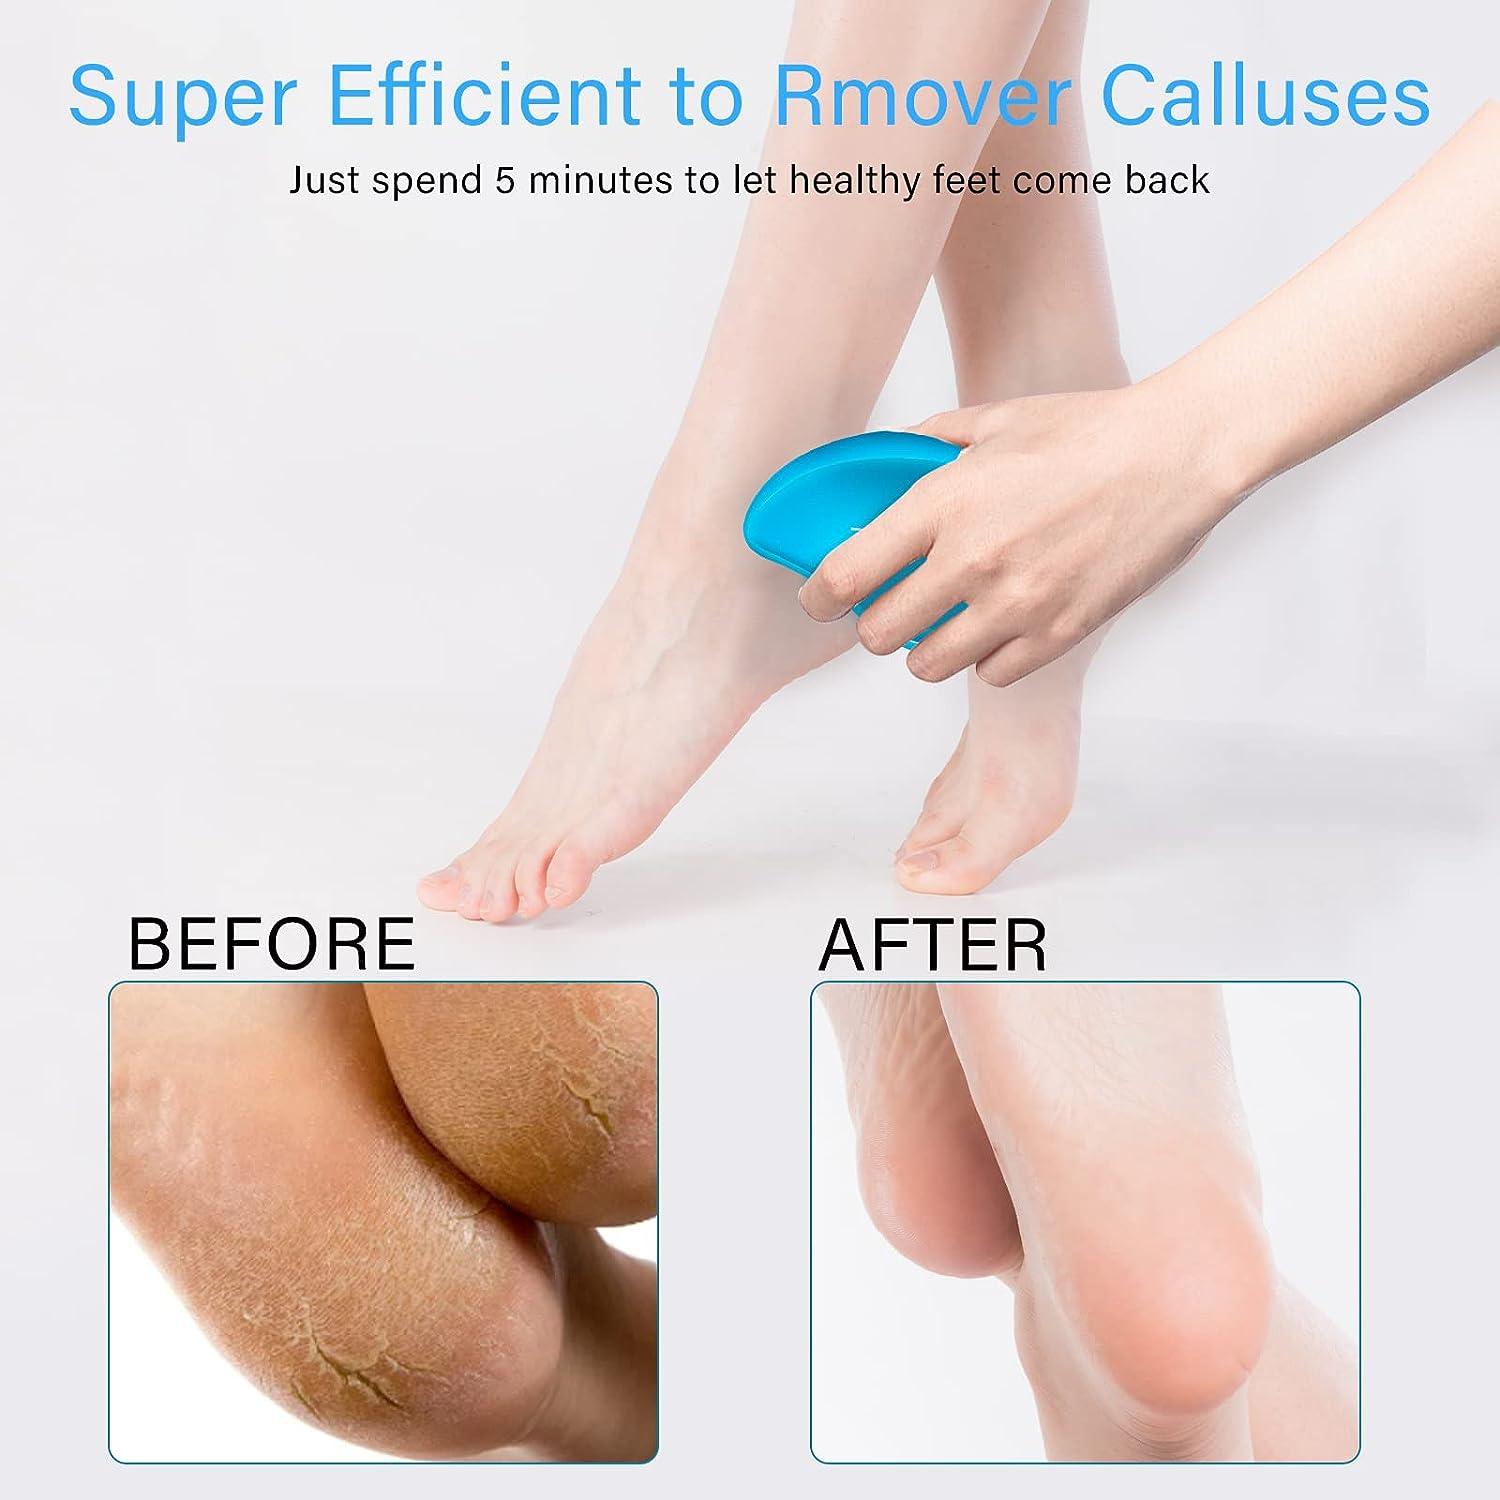 Nano Glass Foot Rasp Heel File Hard Dead Skin Callus Remover